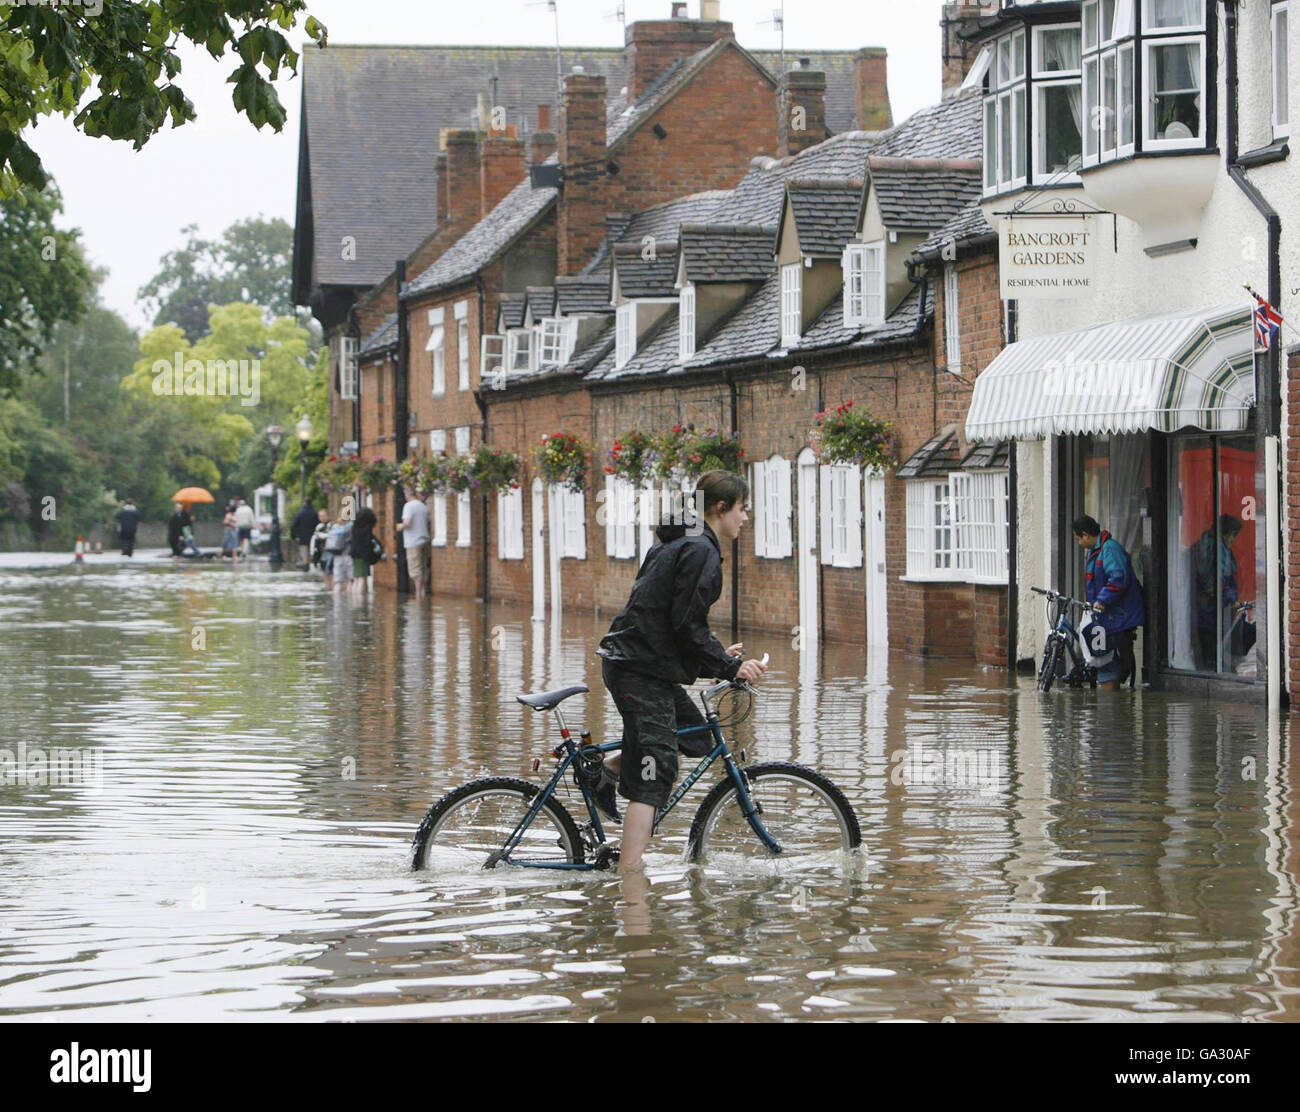 Eine Radfahrerin macht sich auf den Weg über eine Straße in Straford-upon-Avon in Warwickshire, nachdem mehrere Teile Großbritanniens nach einem Tag starken Regens von Überschwemmungen heimgesucht wurden. Stockfoto